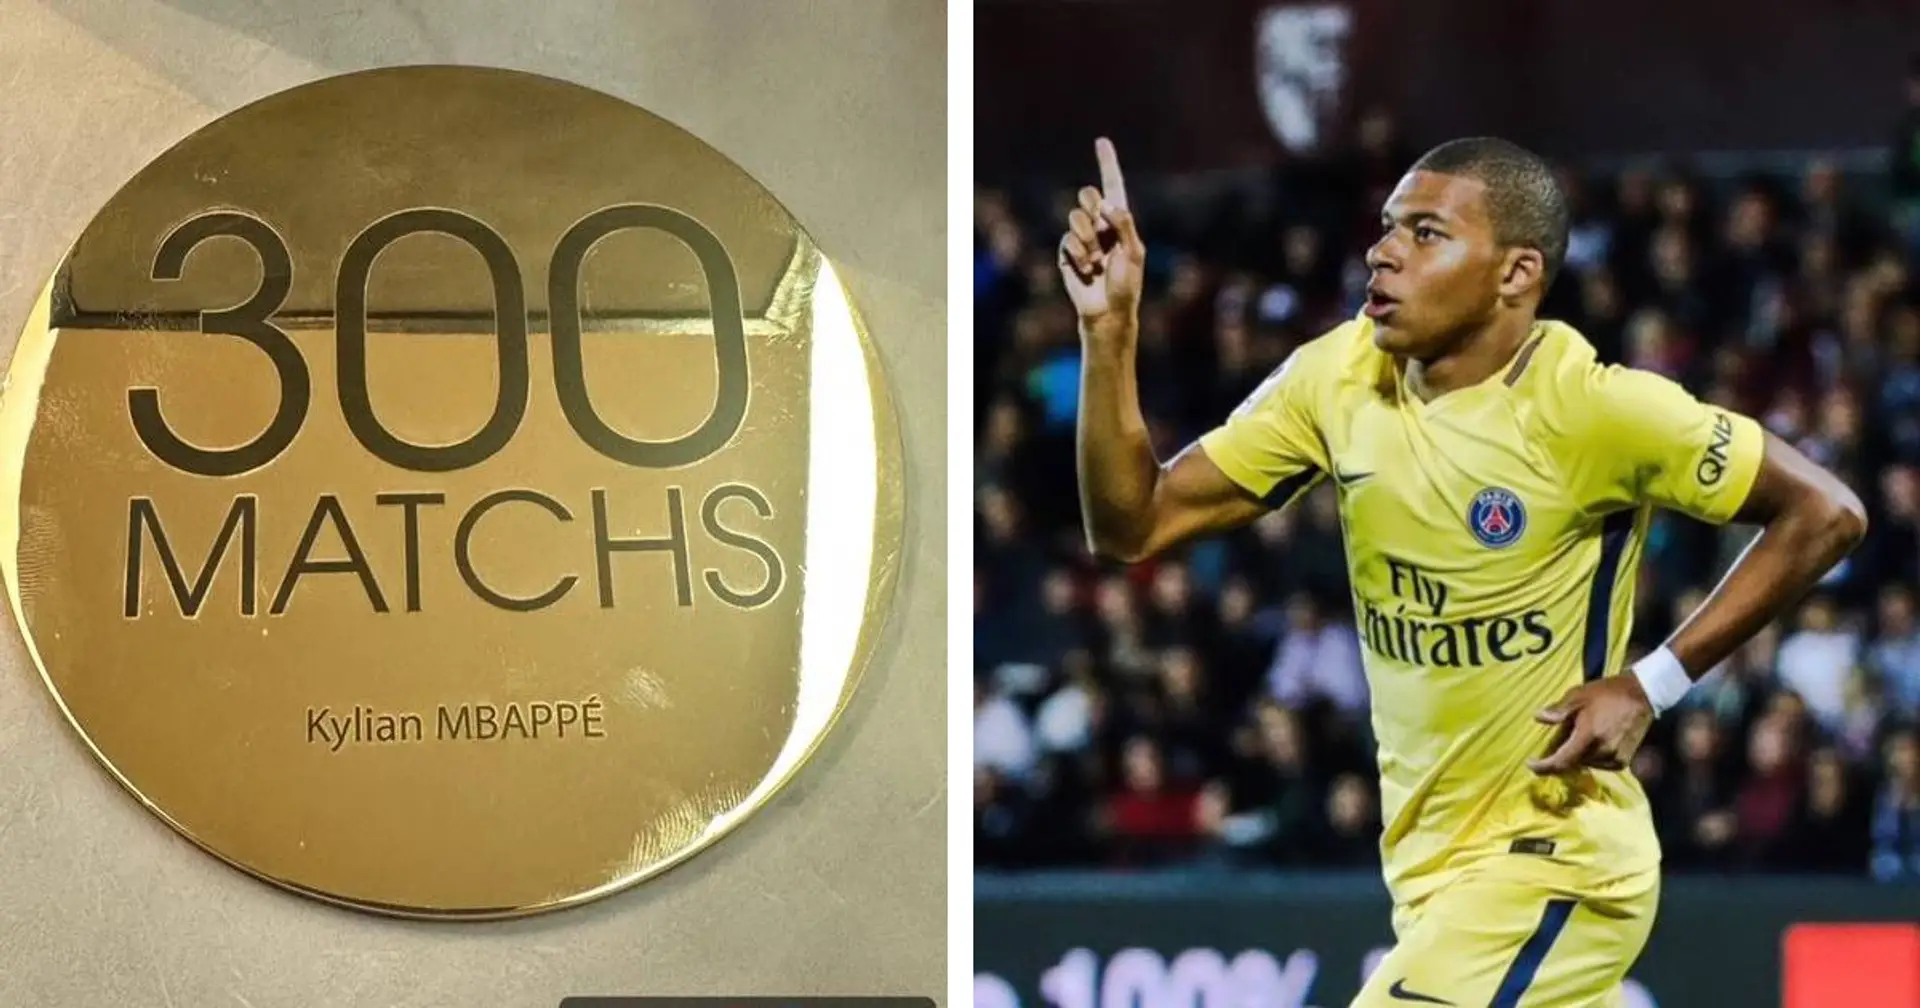 "Wow !" : Kylian Mbappé réagit sur Instagram à un nouveau cap passé avec le PSG